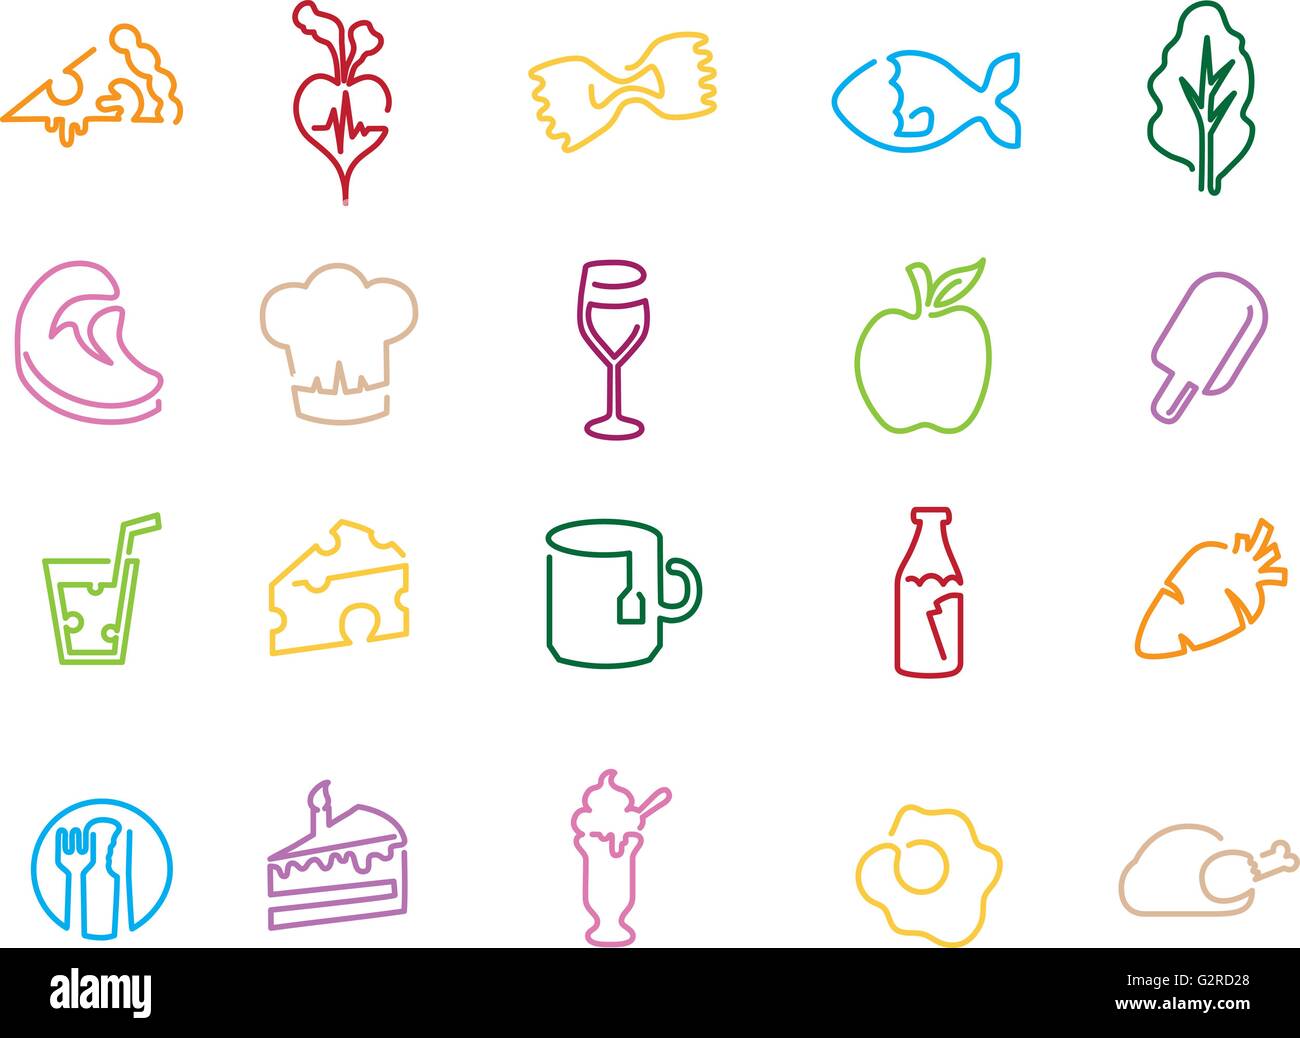 Illustrazione delle icone relative a mangiare, bere e dieta Illustrazione Vettoriale